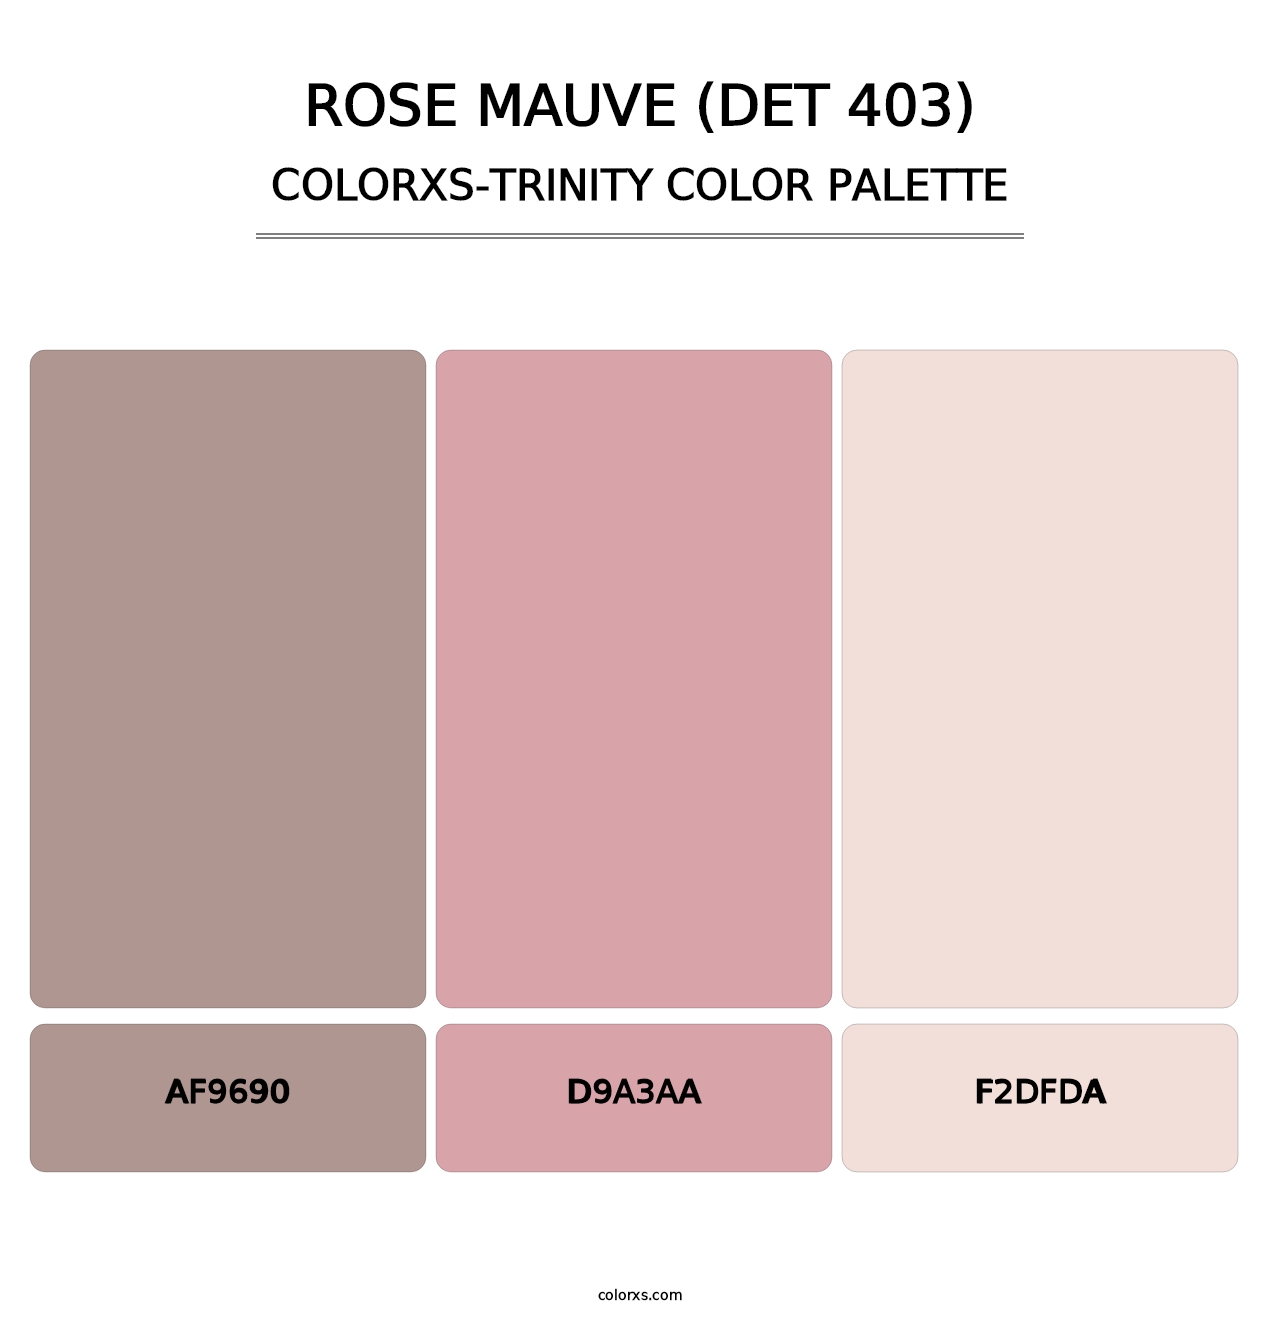 Rose Mauve (DET 403) - Colorxs Trinity Palette